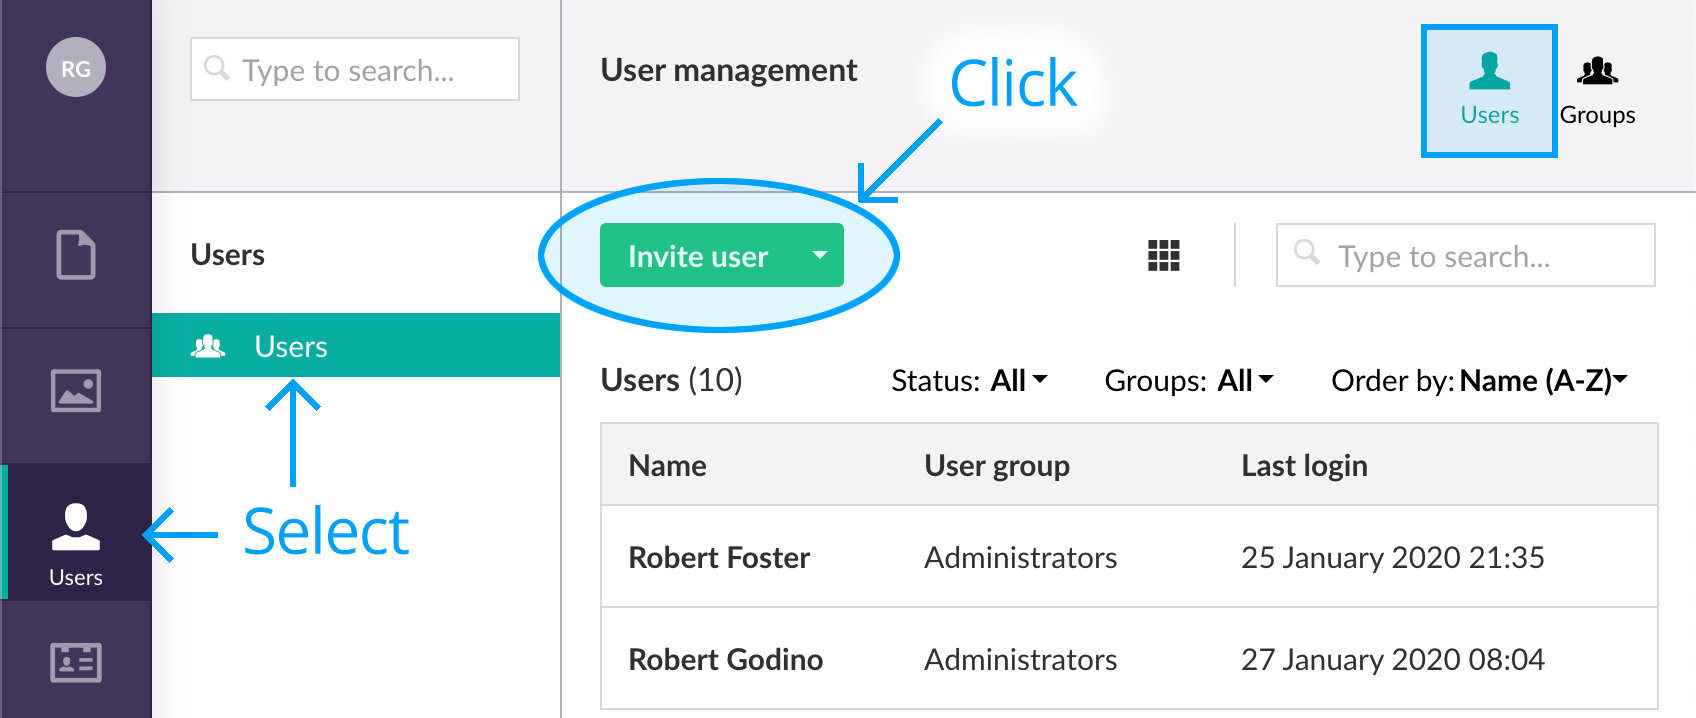 Invite user screen